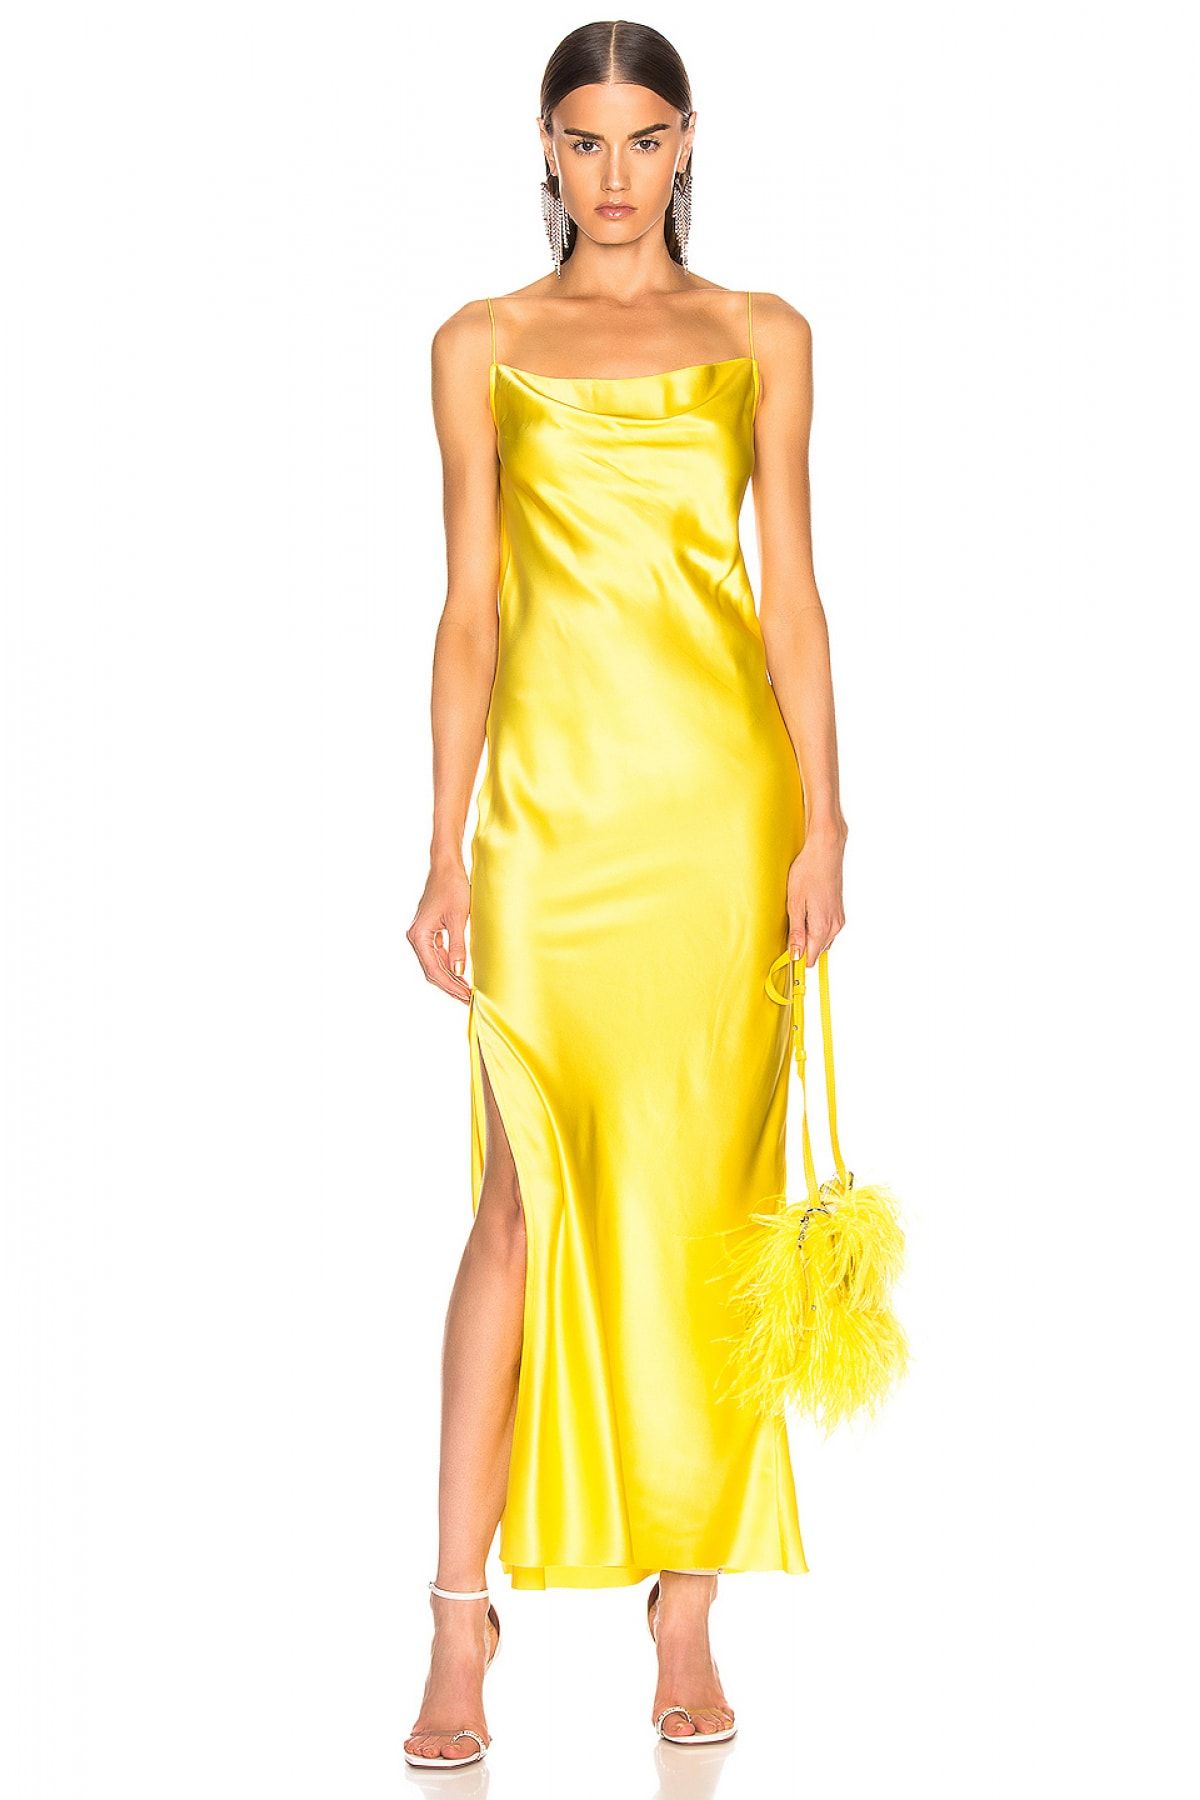 By Umut Design Kadın Sarı Degaje Yaka Spagetti Askılı Yandan Yırtmaçlı İpek Saten Elbise 4574267